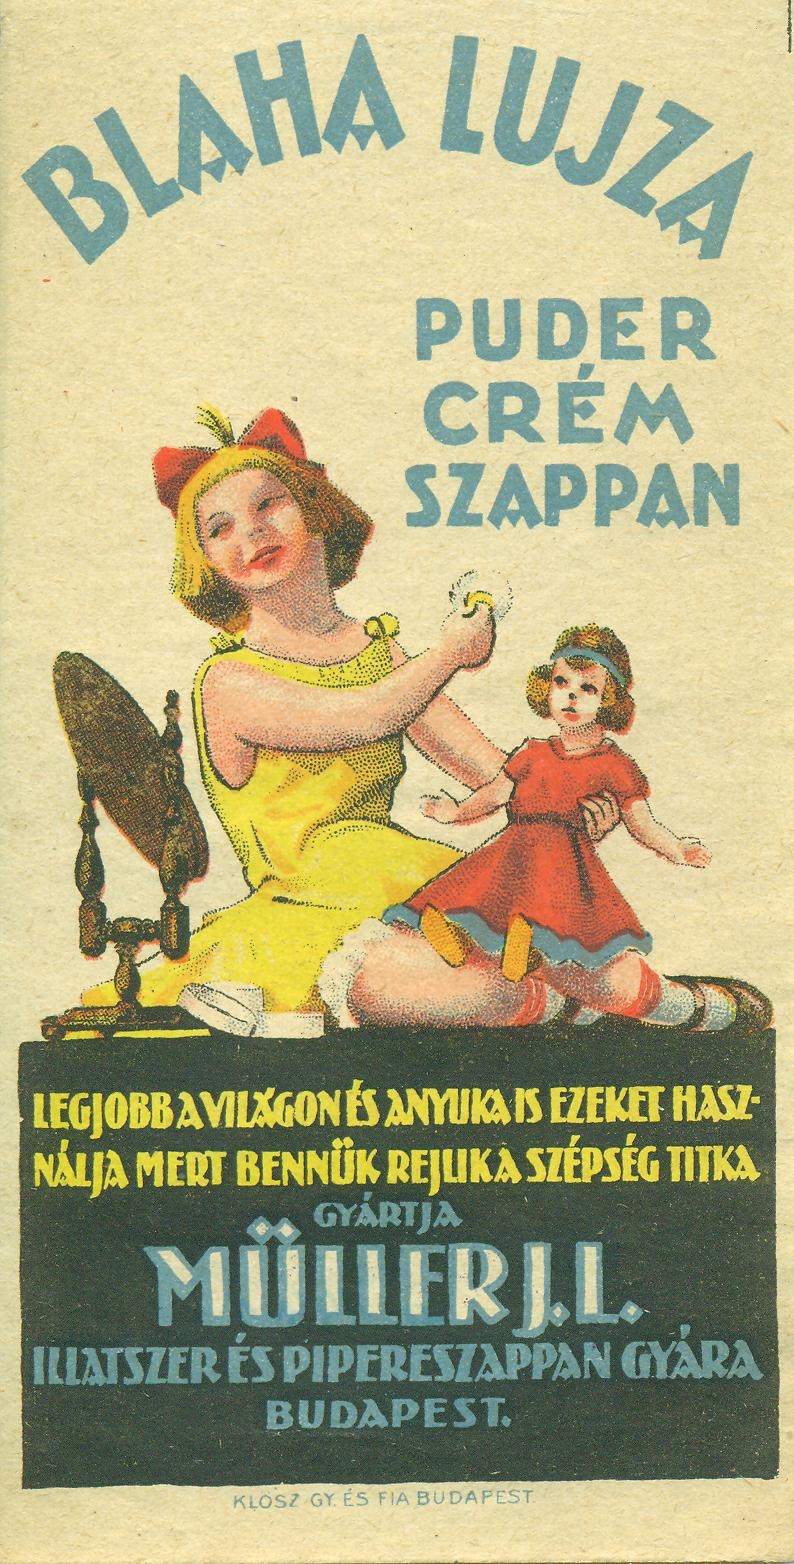 BLaha Lujza Puder Crém szappan (Magyar Kereskedelmi és Vendéglátóipari Múzeum CC BY-NC-SA)